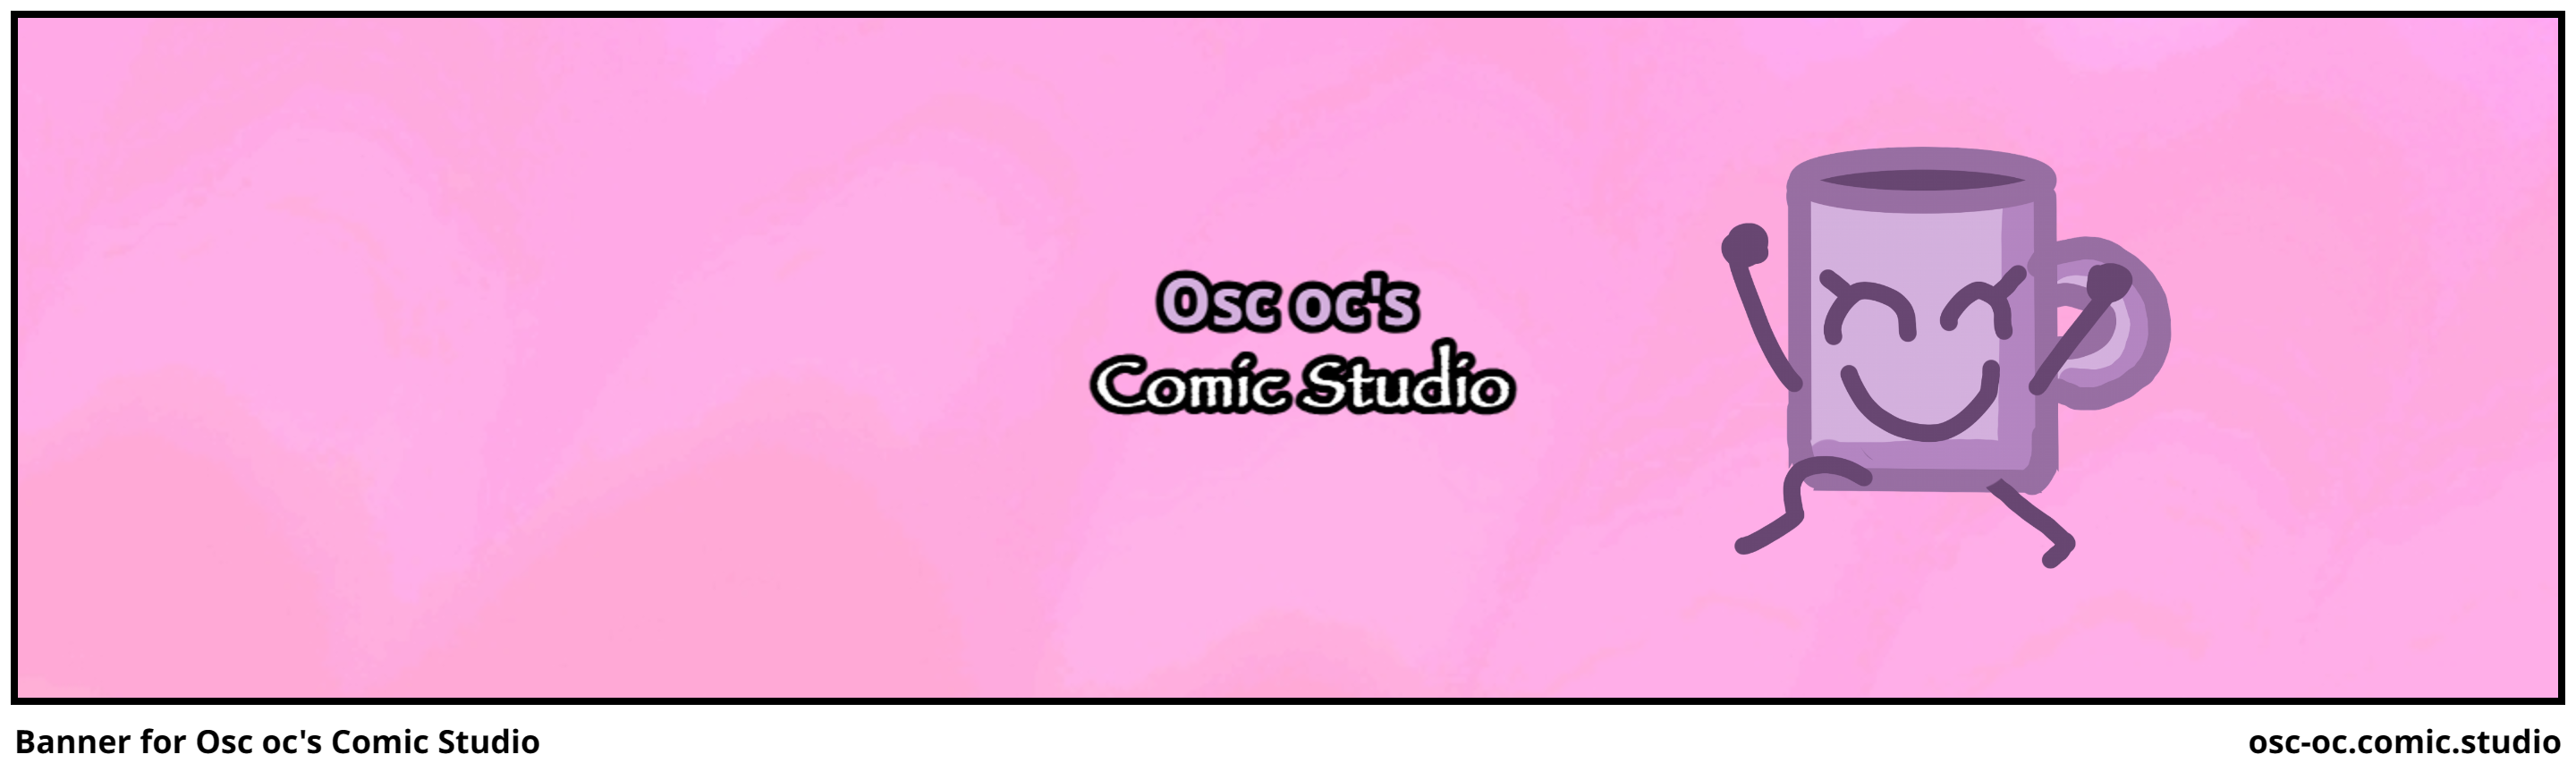 Banner for Osc oc's Comic Studio